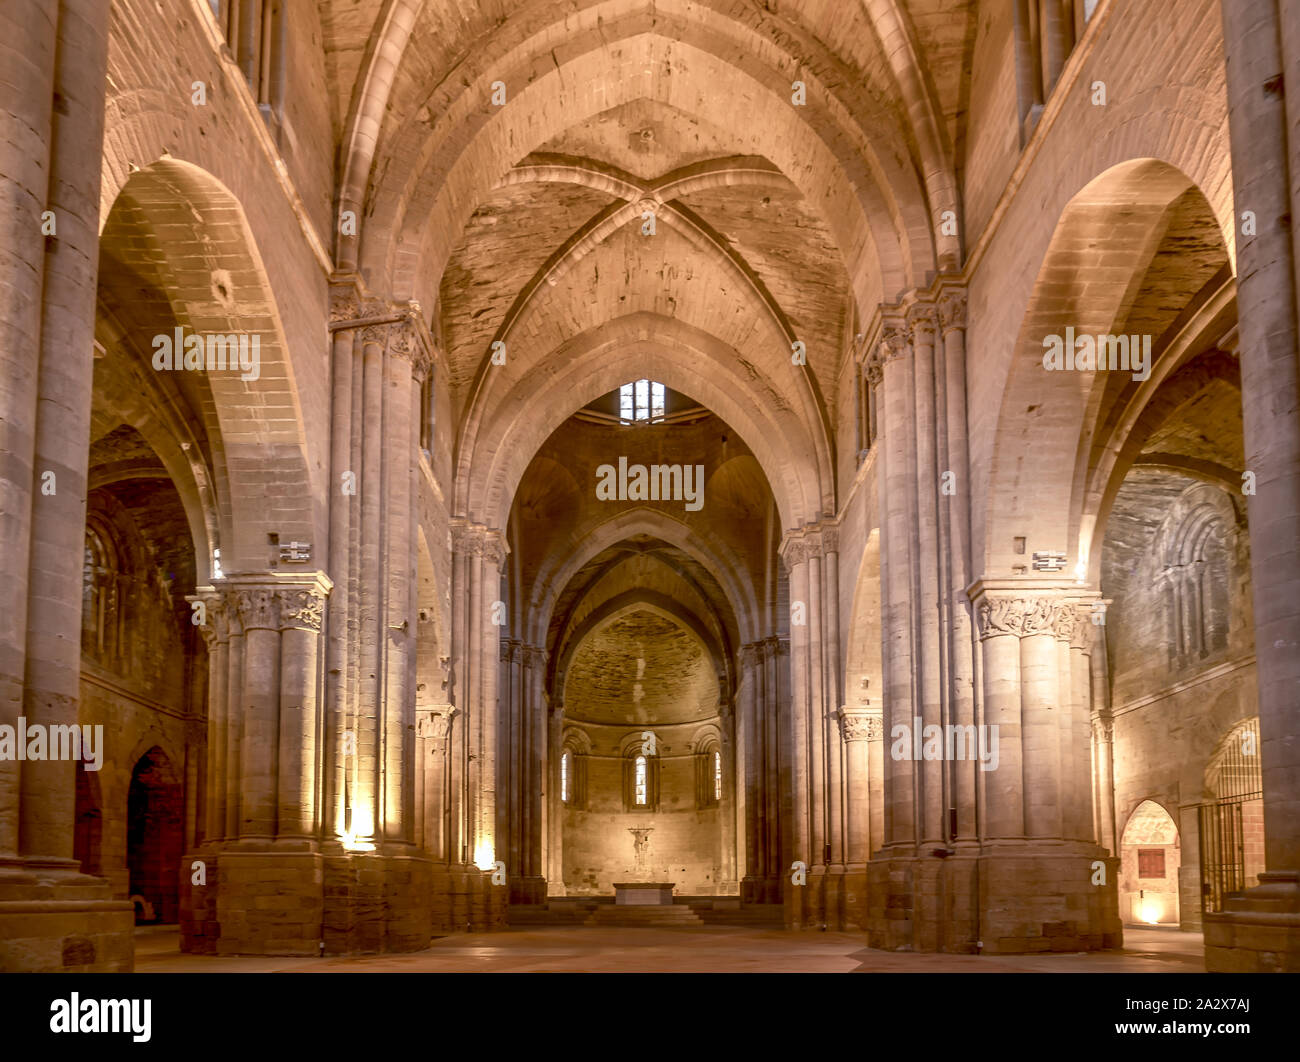 Innerhalb der Seu Vella gotische Kathedrale in Lleida, Mallorca, Spanien Stockfoto